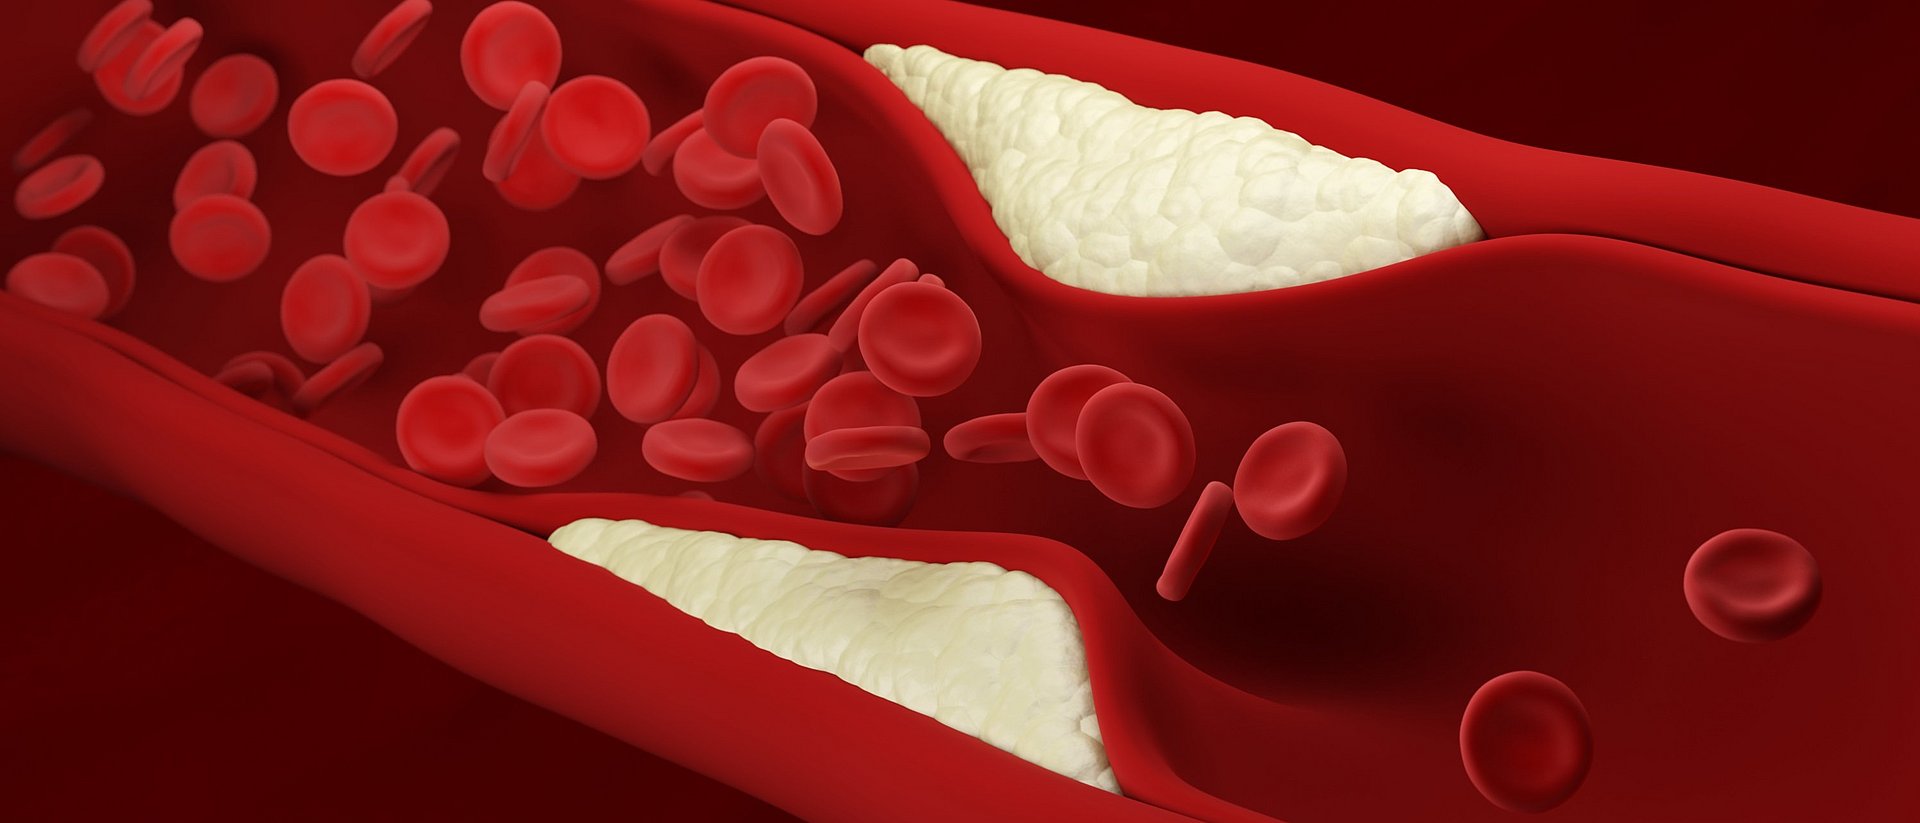 Illustration des Blutflusses durch eine verengte Arterie.